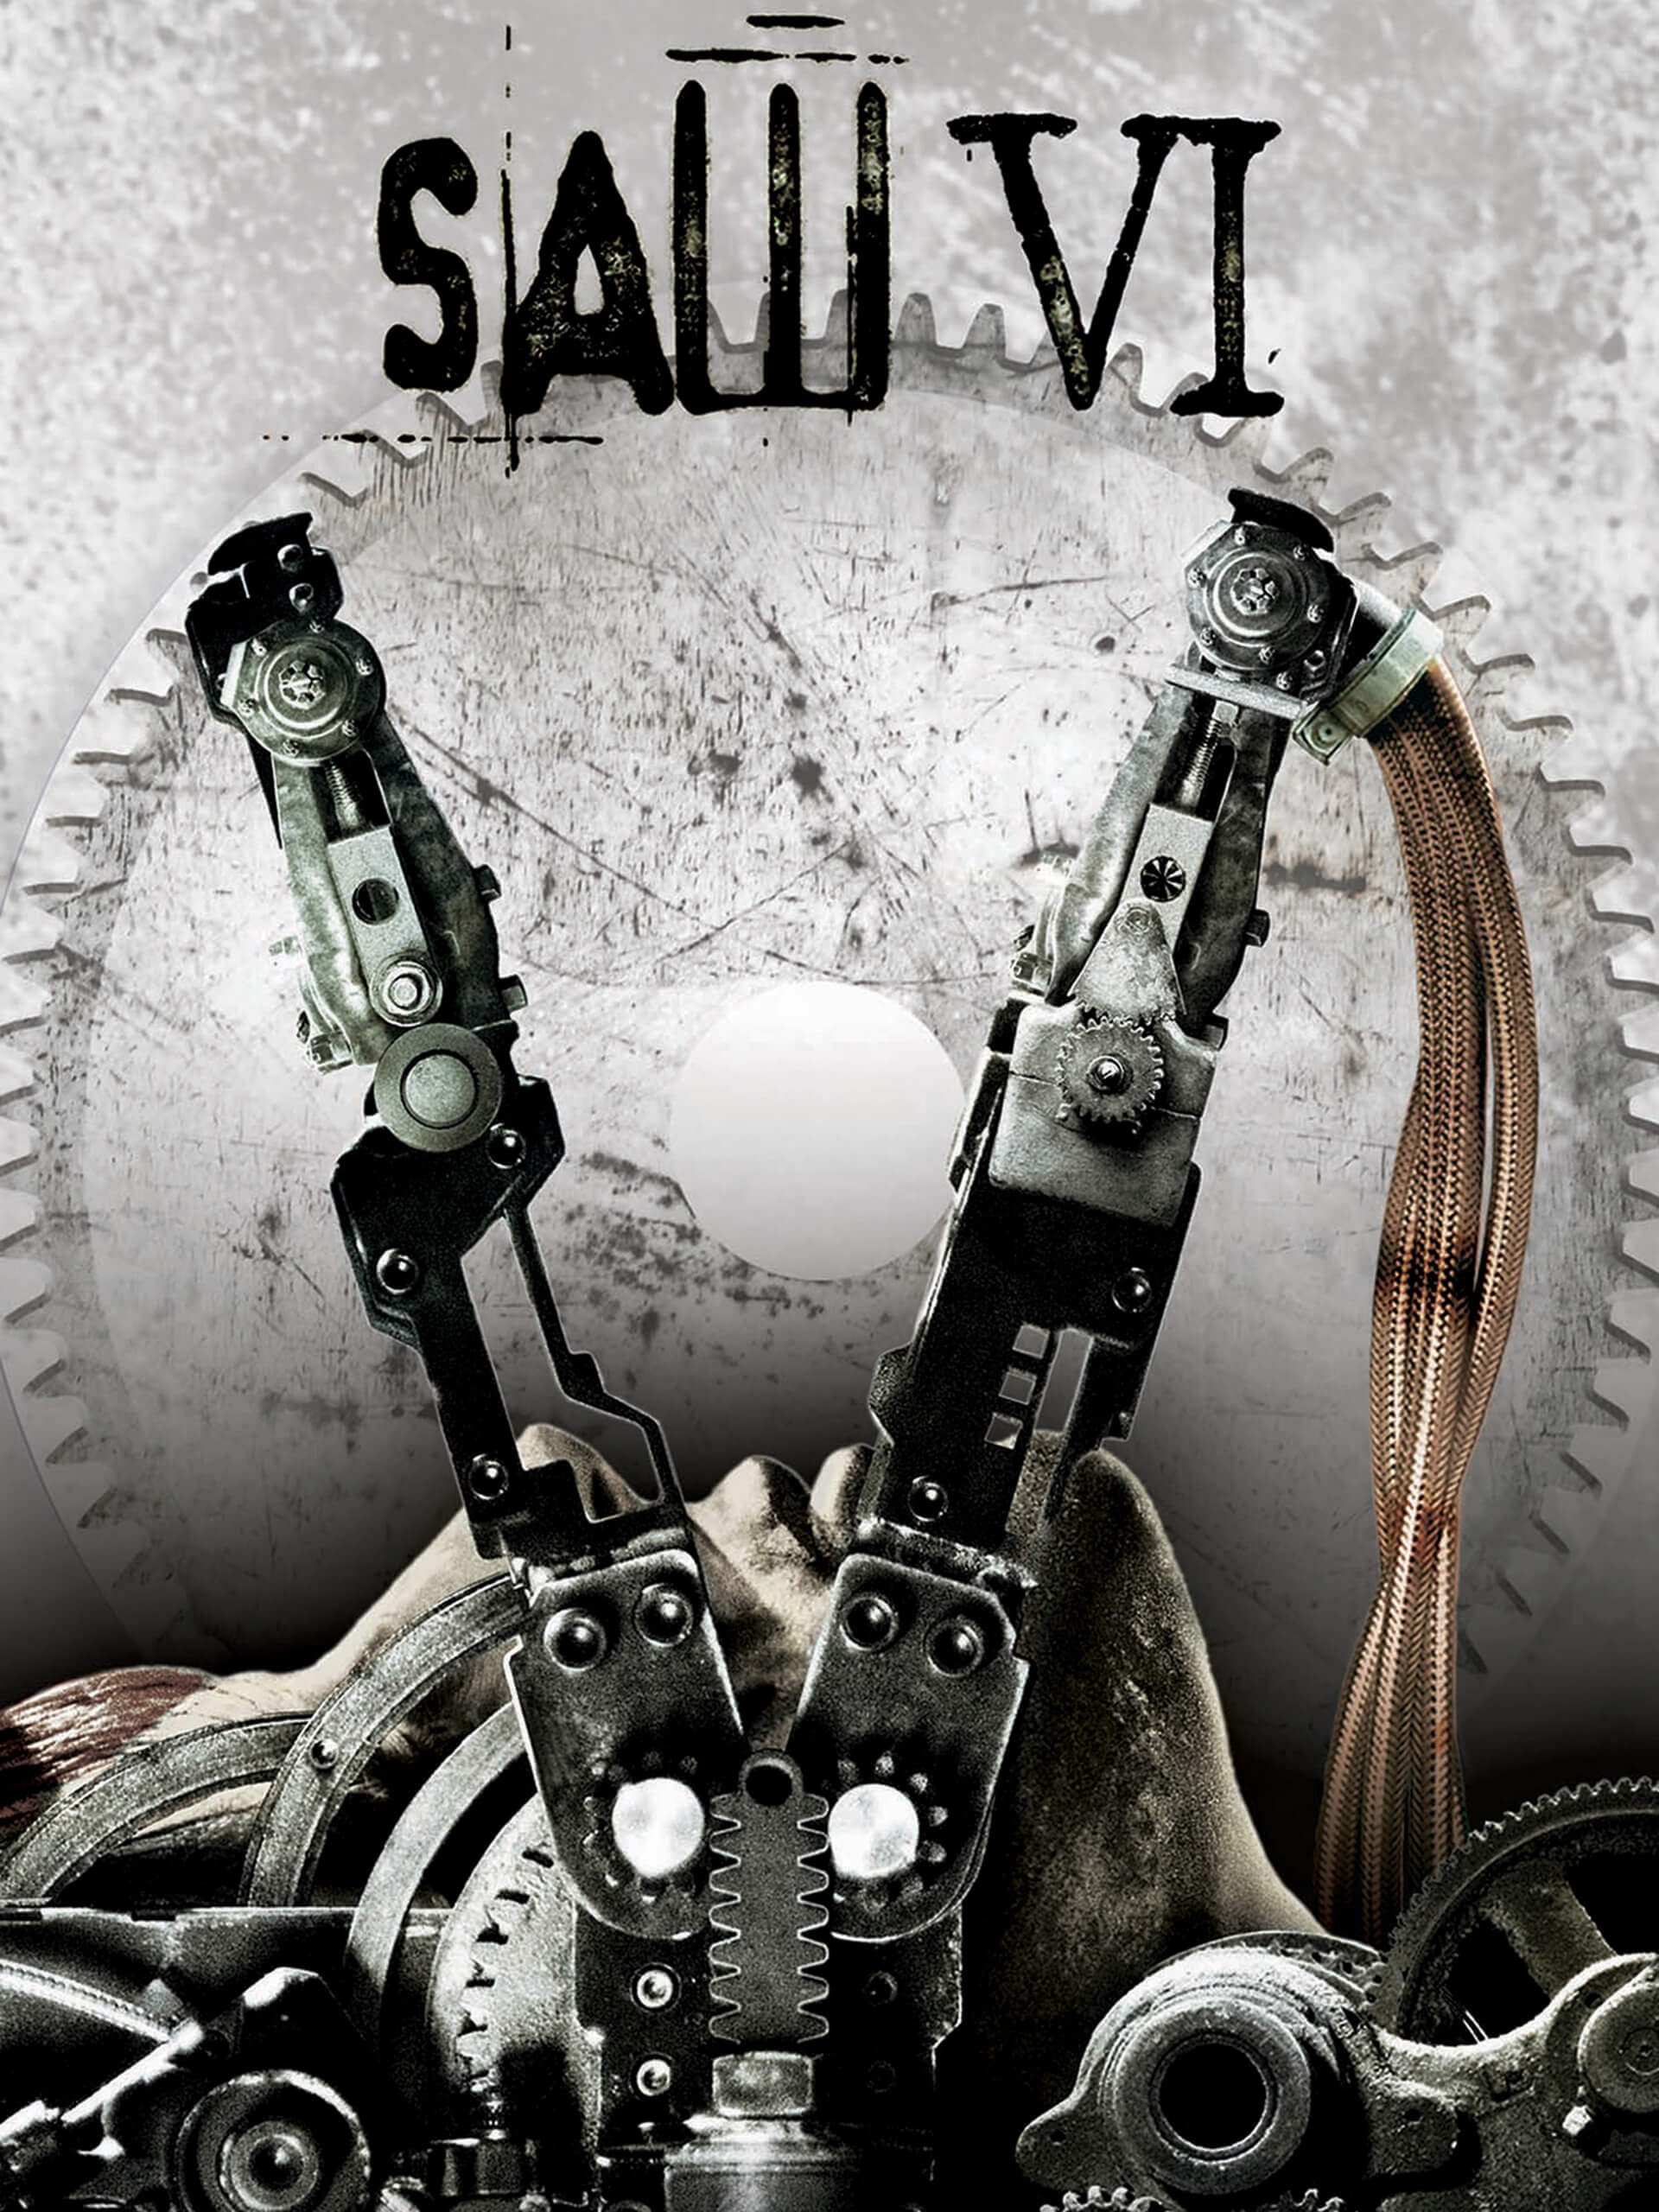 ดูหนังออนไลน์ฟรี Saw VI (2009) ซอว์ เกมต่อตาย..ตัดเป็น ภาค 6